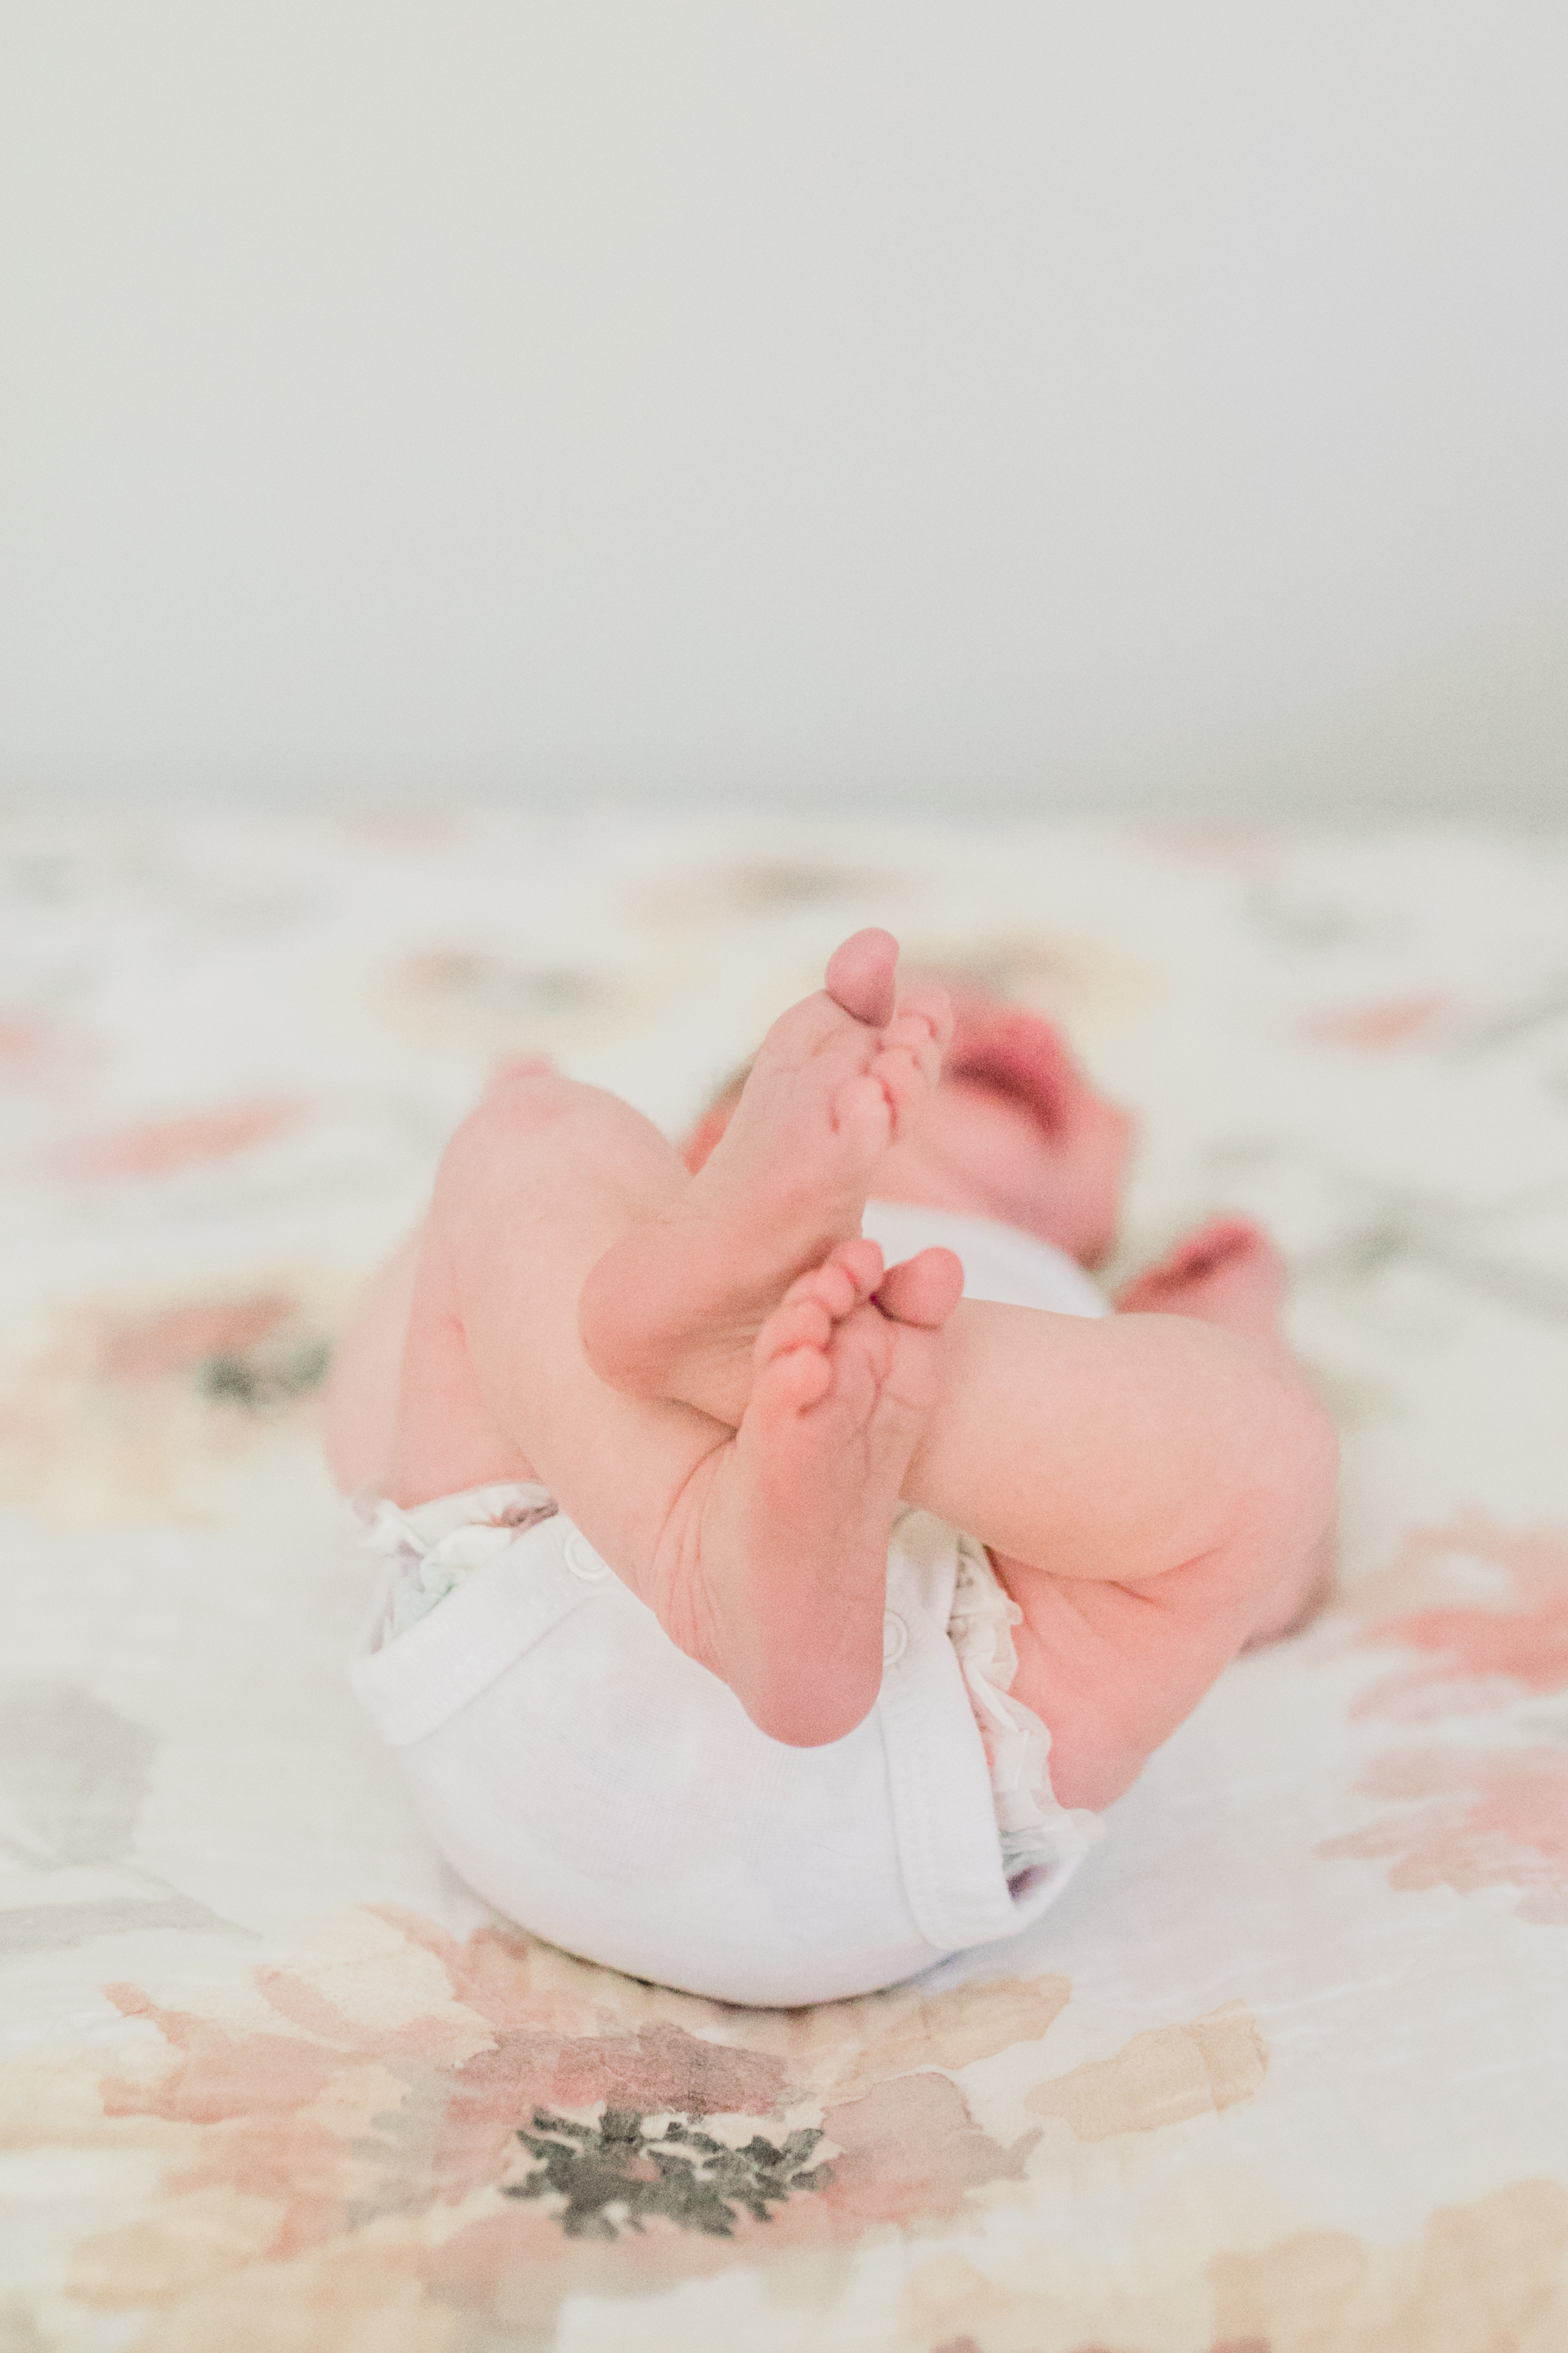 vanessa wyler waukesha newborn photography